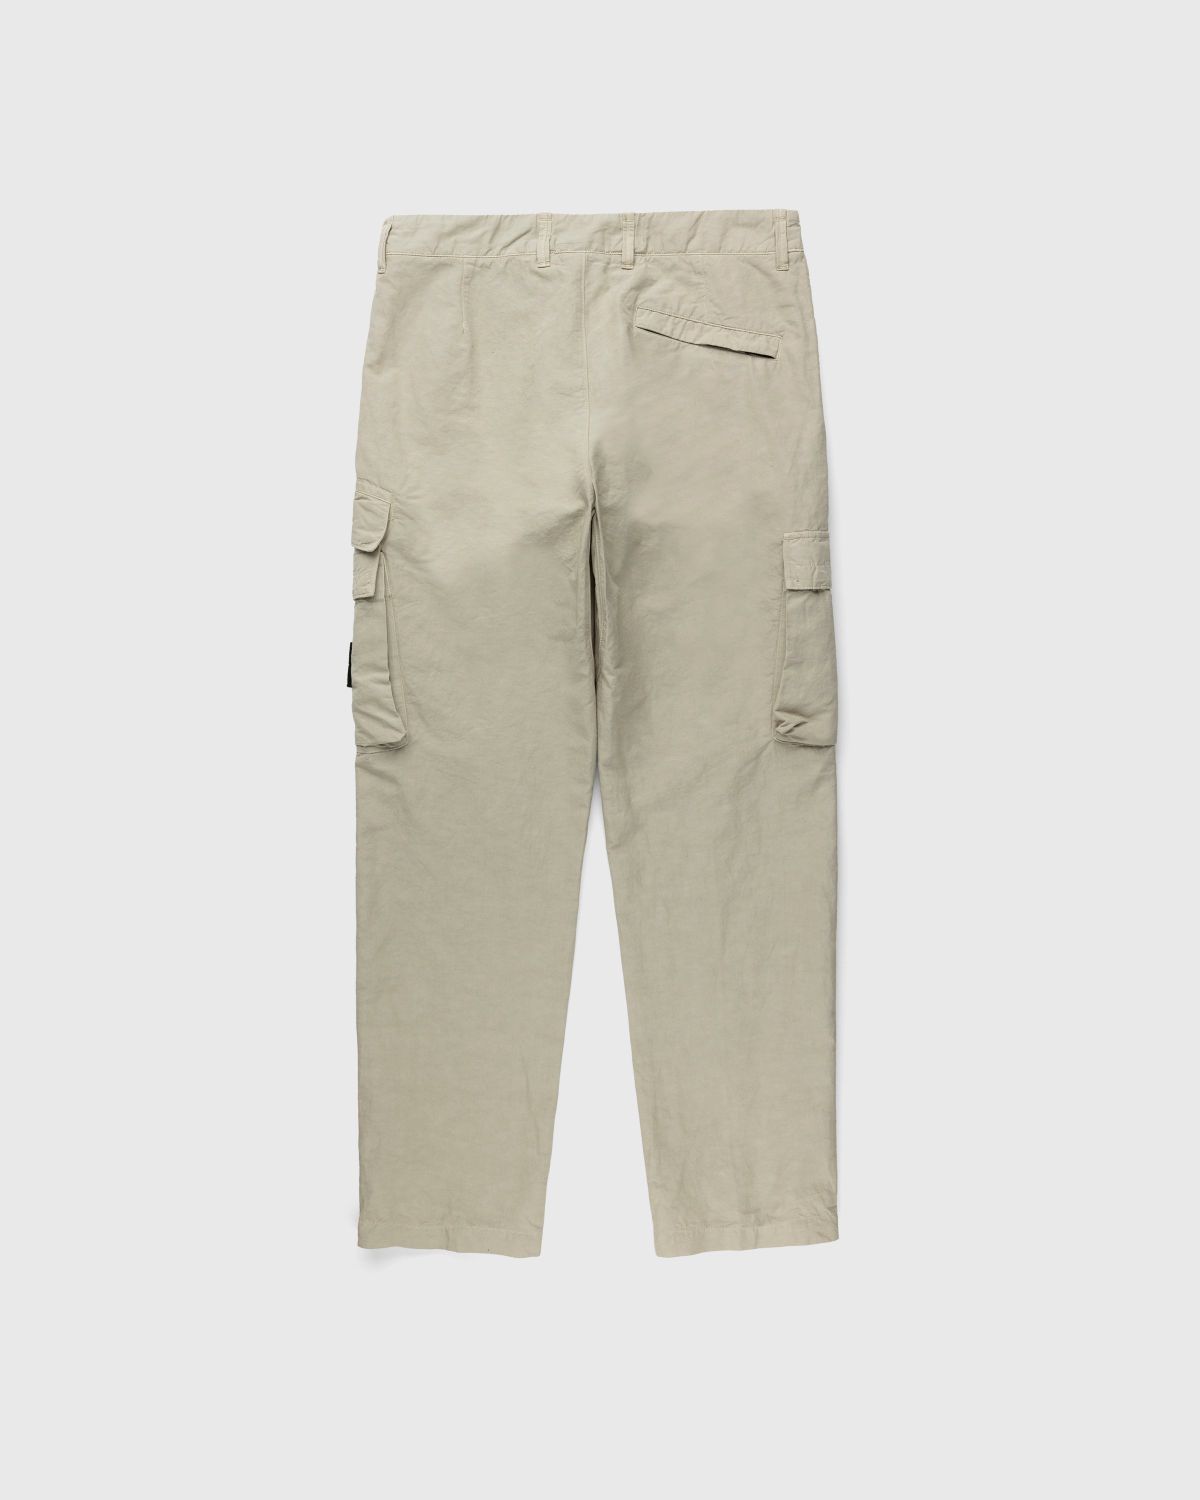 Stone Island – 31706 Garment-Dyed Cargo Pants Khaki - Cargo Pants - Beige - Image 2